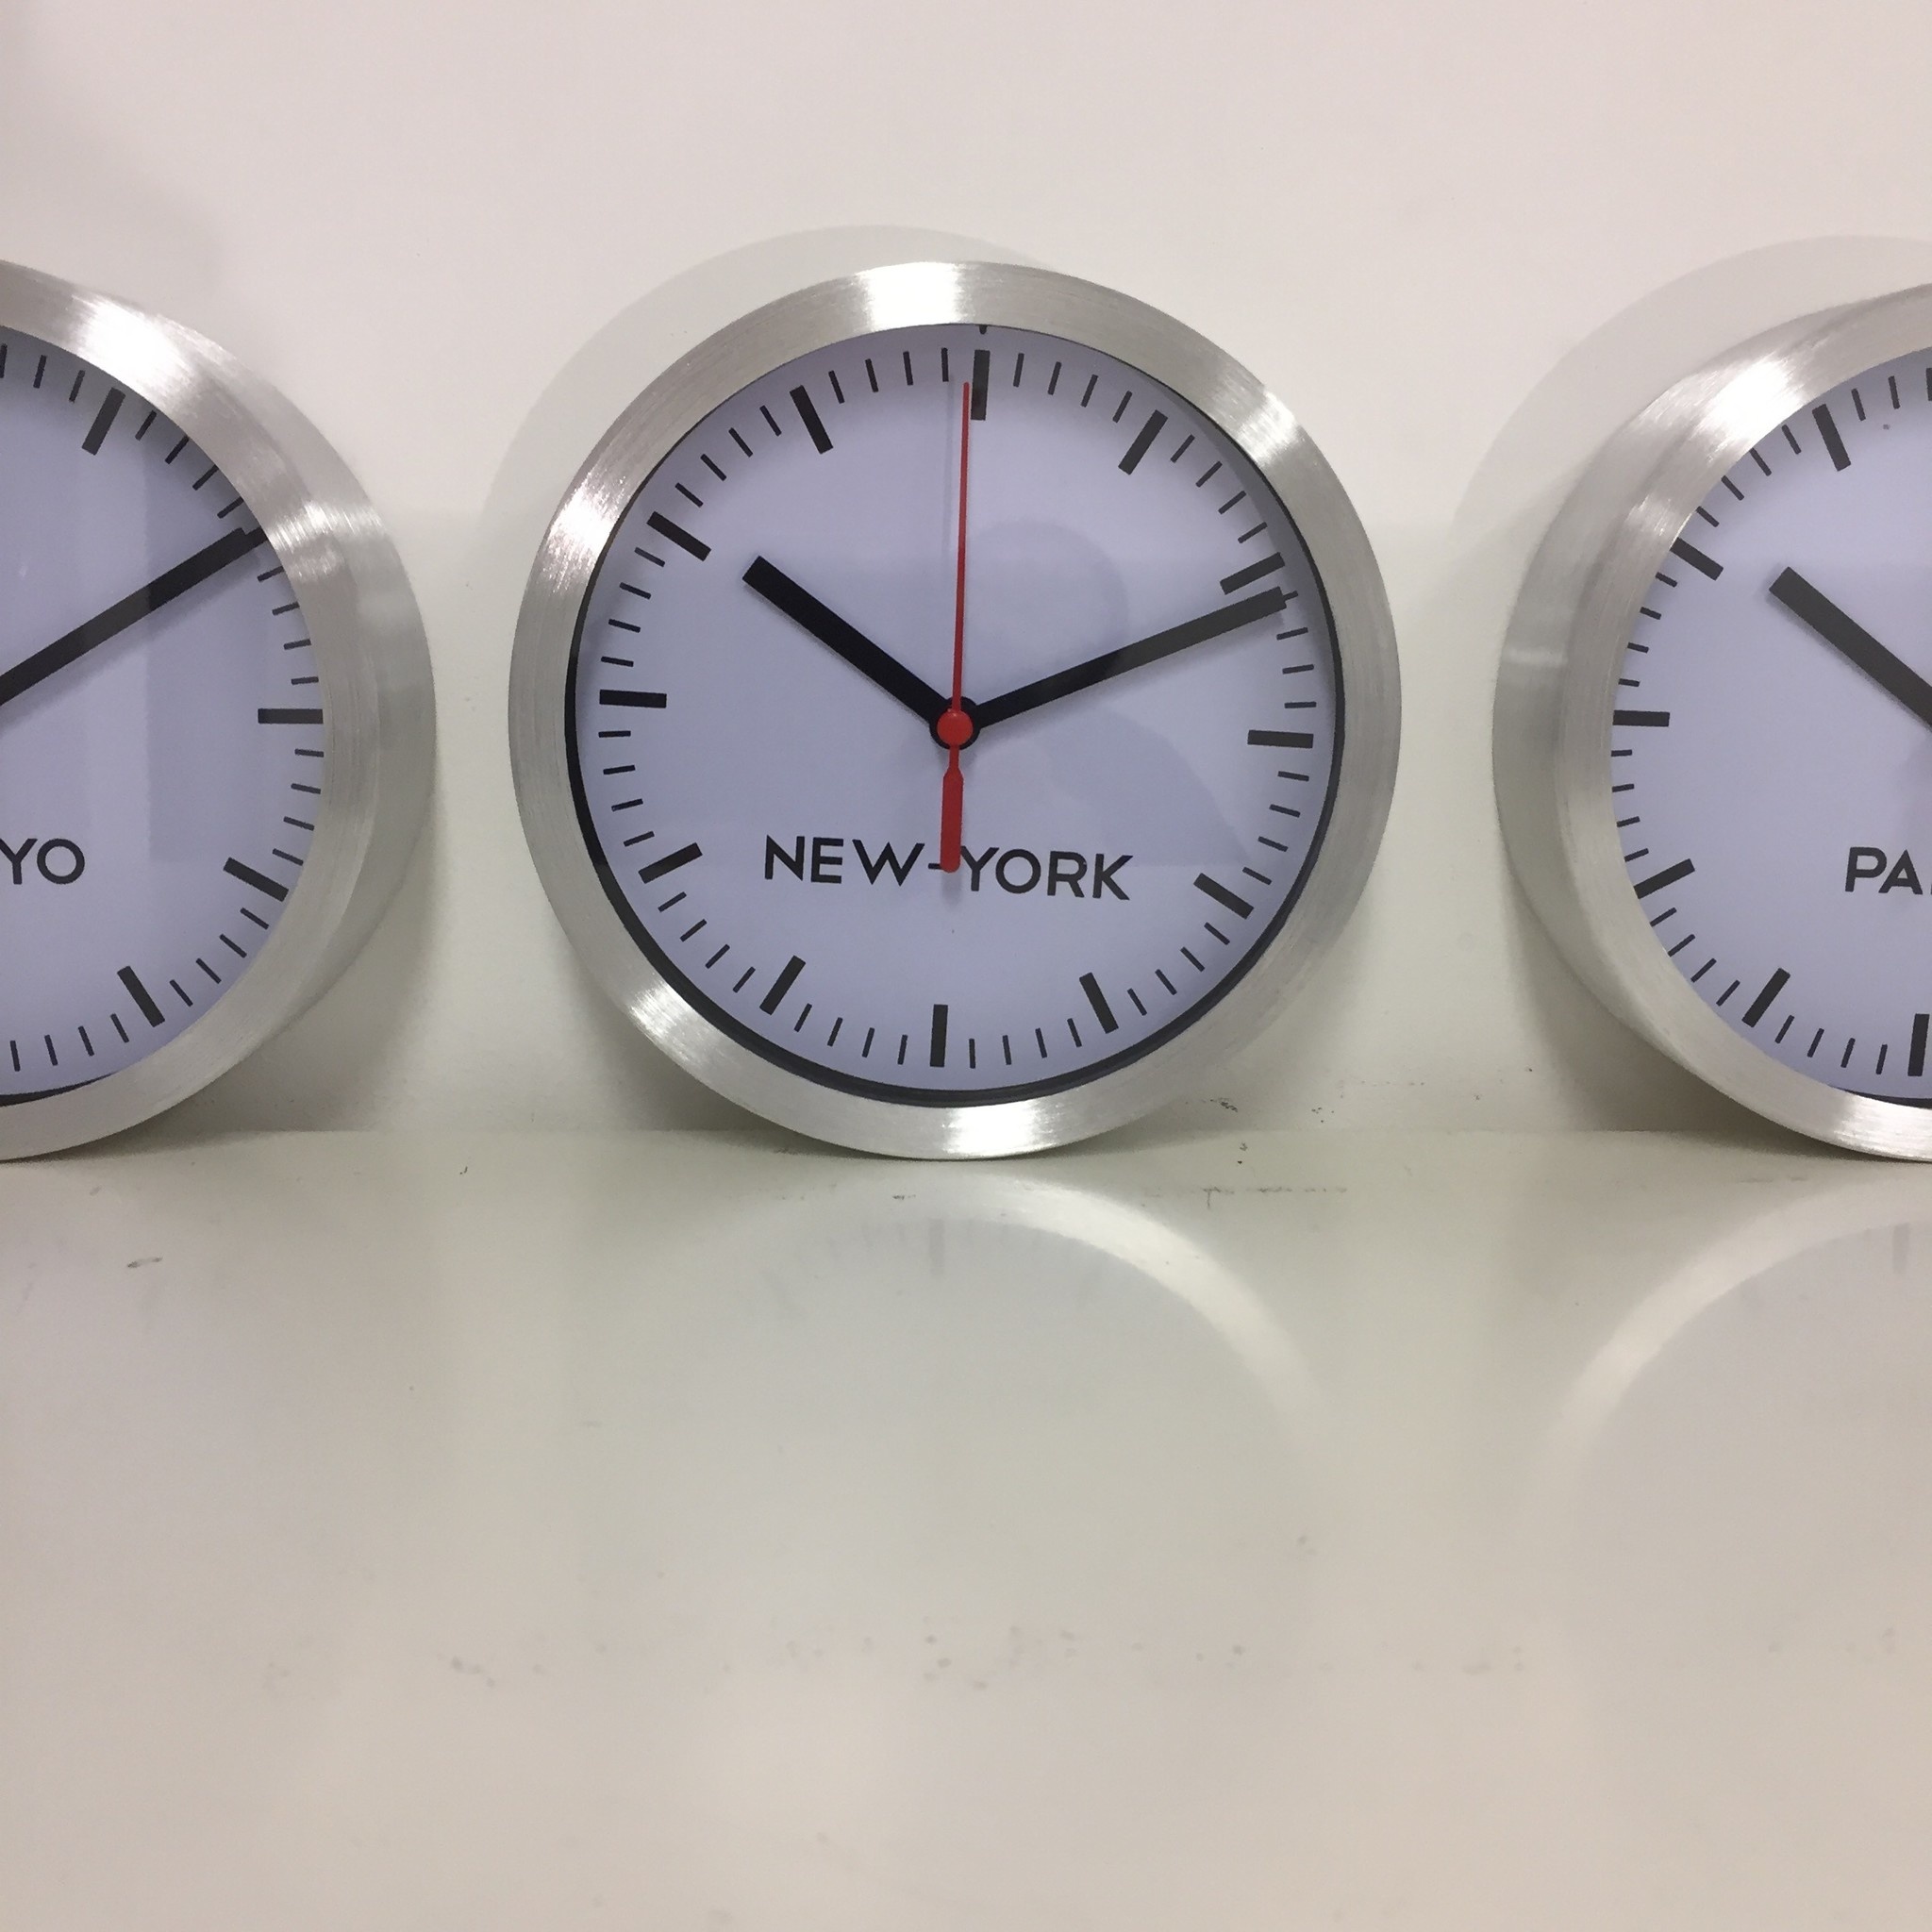 NiceTime Design - Wall clock set 3 pieces New York - Paris - Tokyo